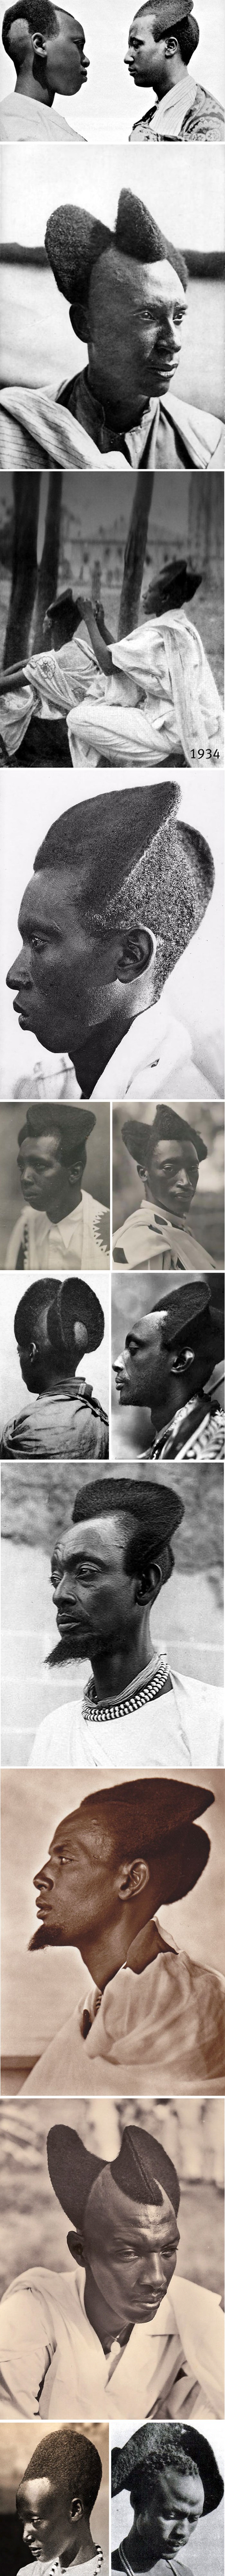 Gotovo sto godina stare fotografije prikazuju jedinstvene frizure stanovnika Ruande